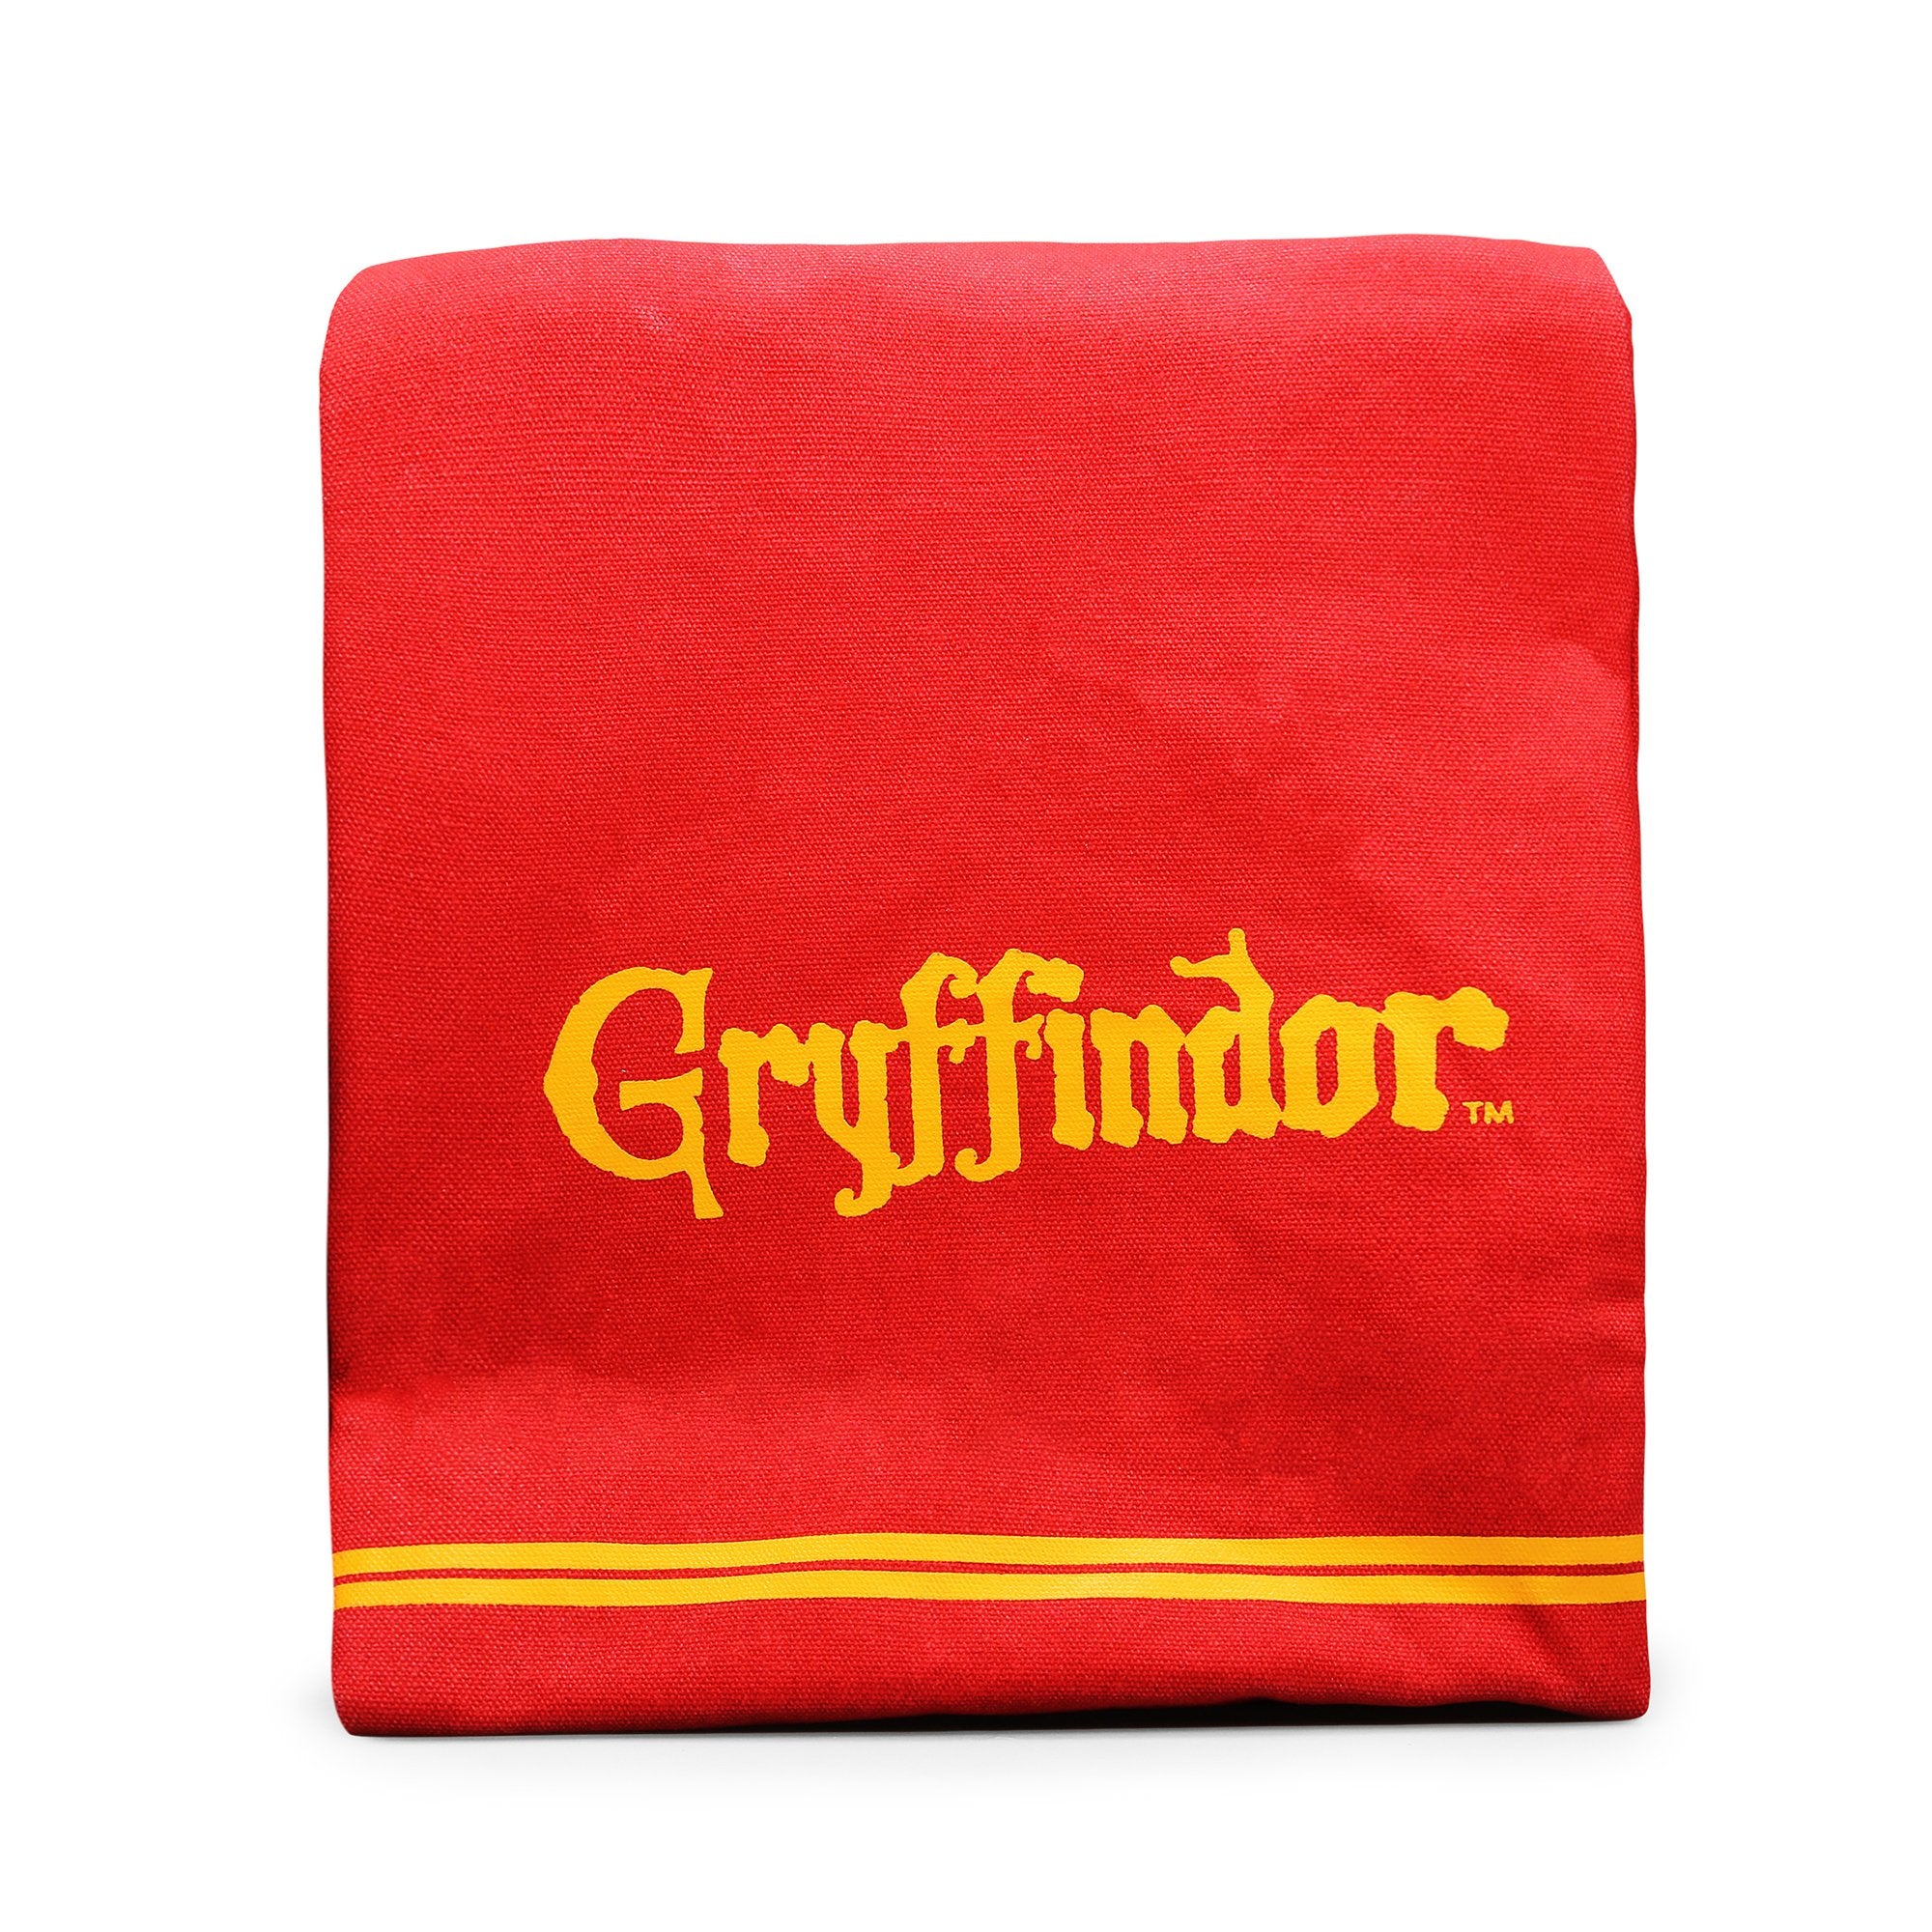 Harry Potter Lunch Bag - Gryffindor